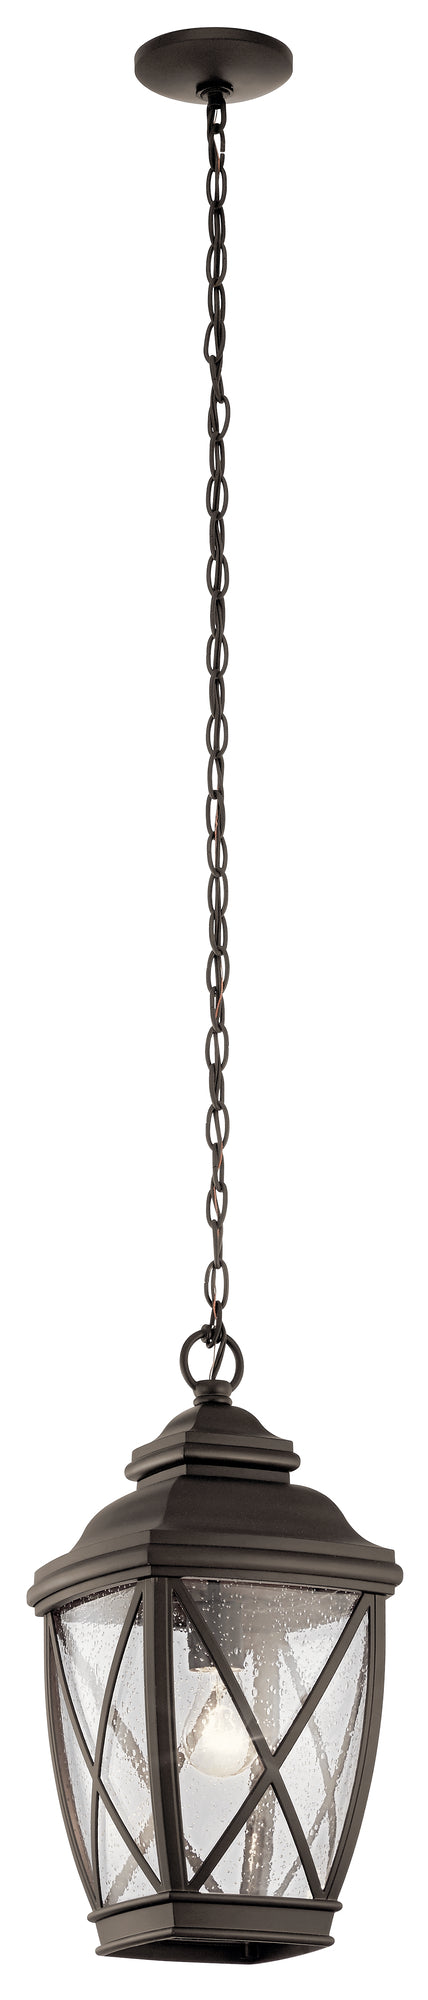 TANGIER Suspension extérieure Bronze - 49844OZ | KICHLER